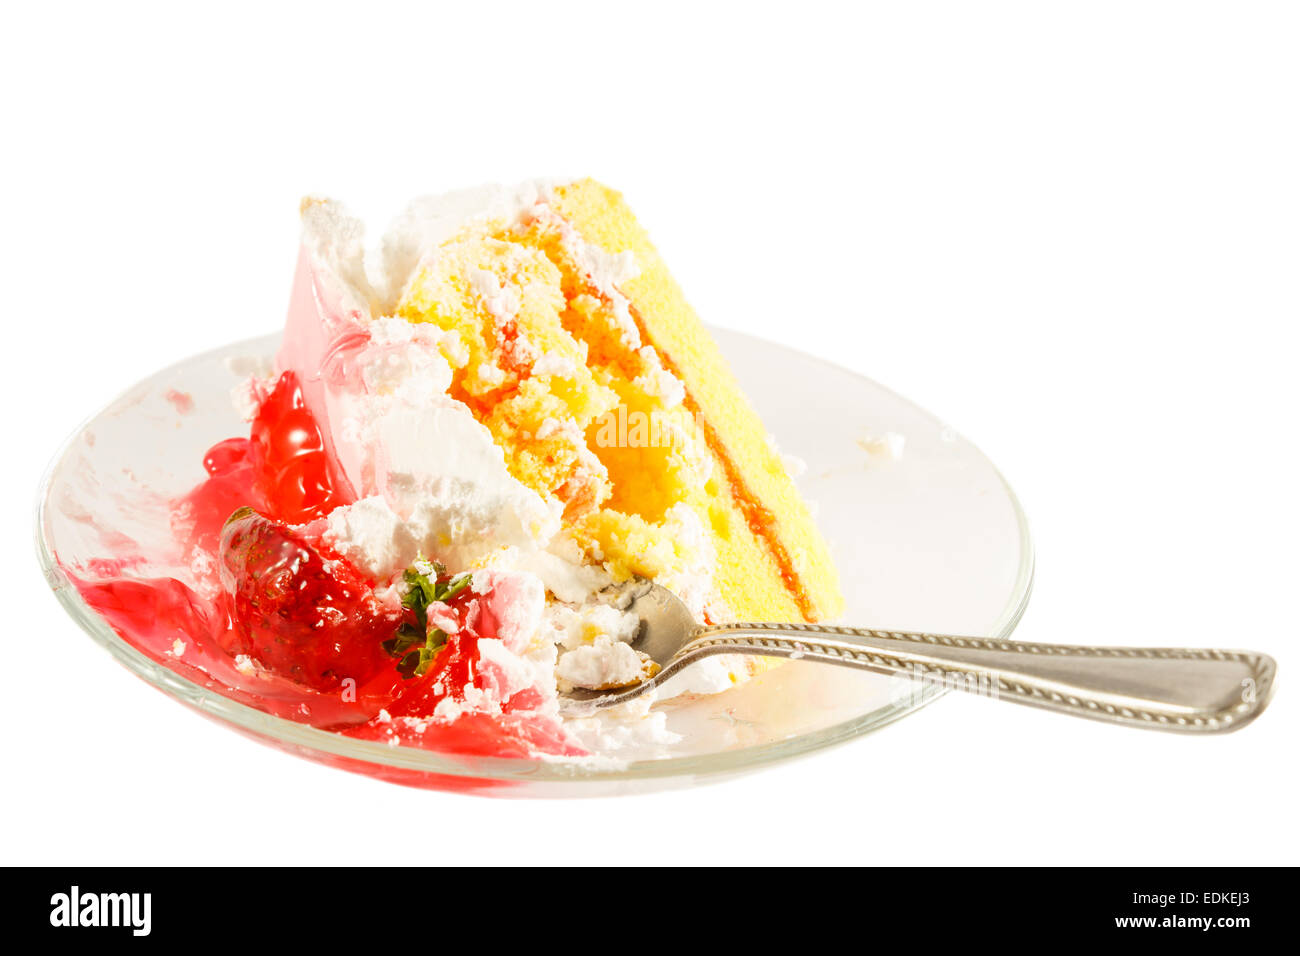 La torta di fragole con crema bianca è stato mangiato da qualcuno (isolato) Foto Stock